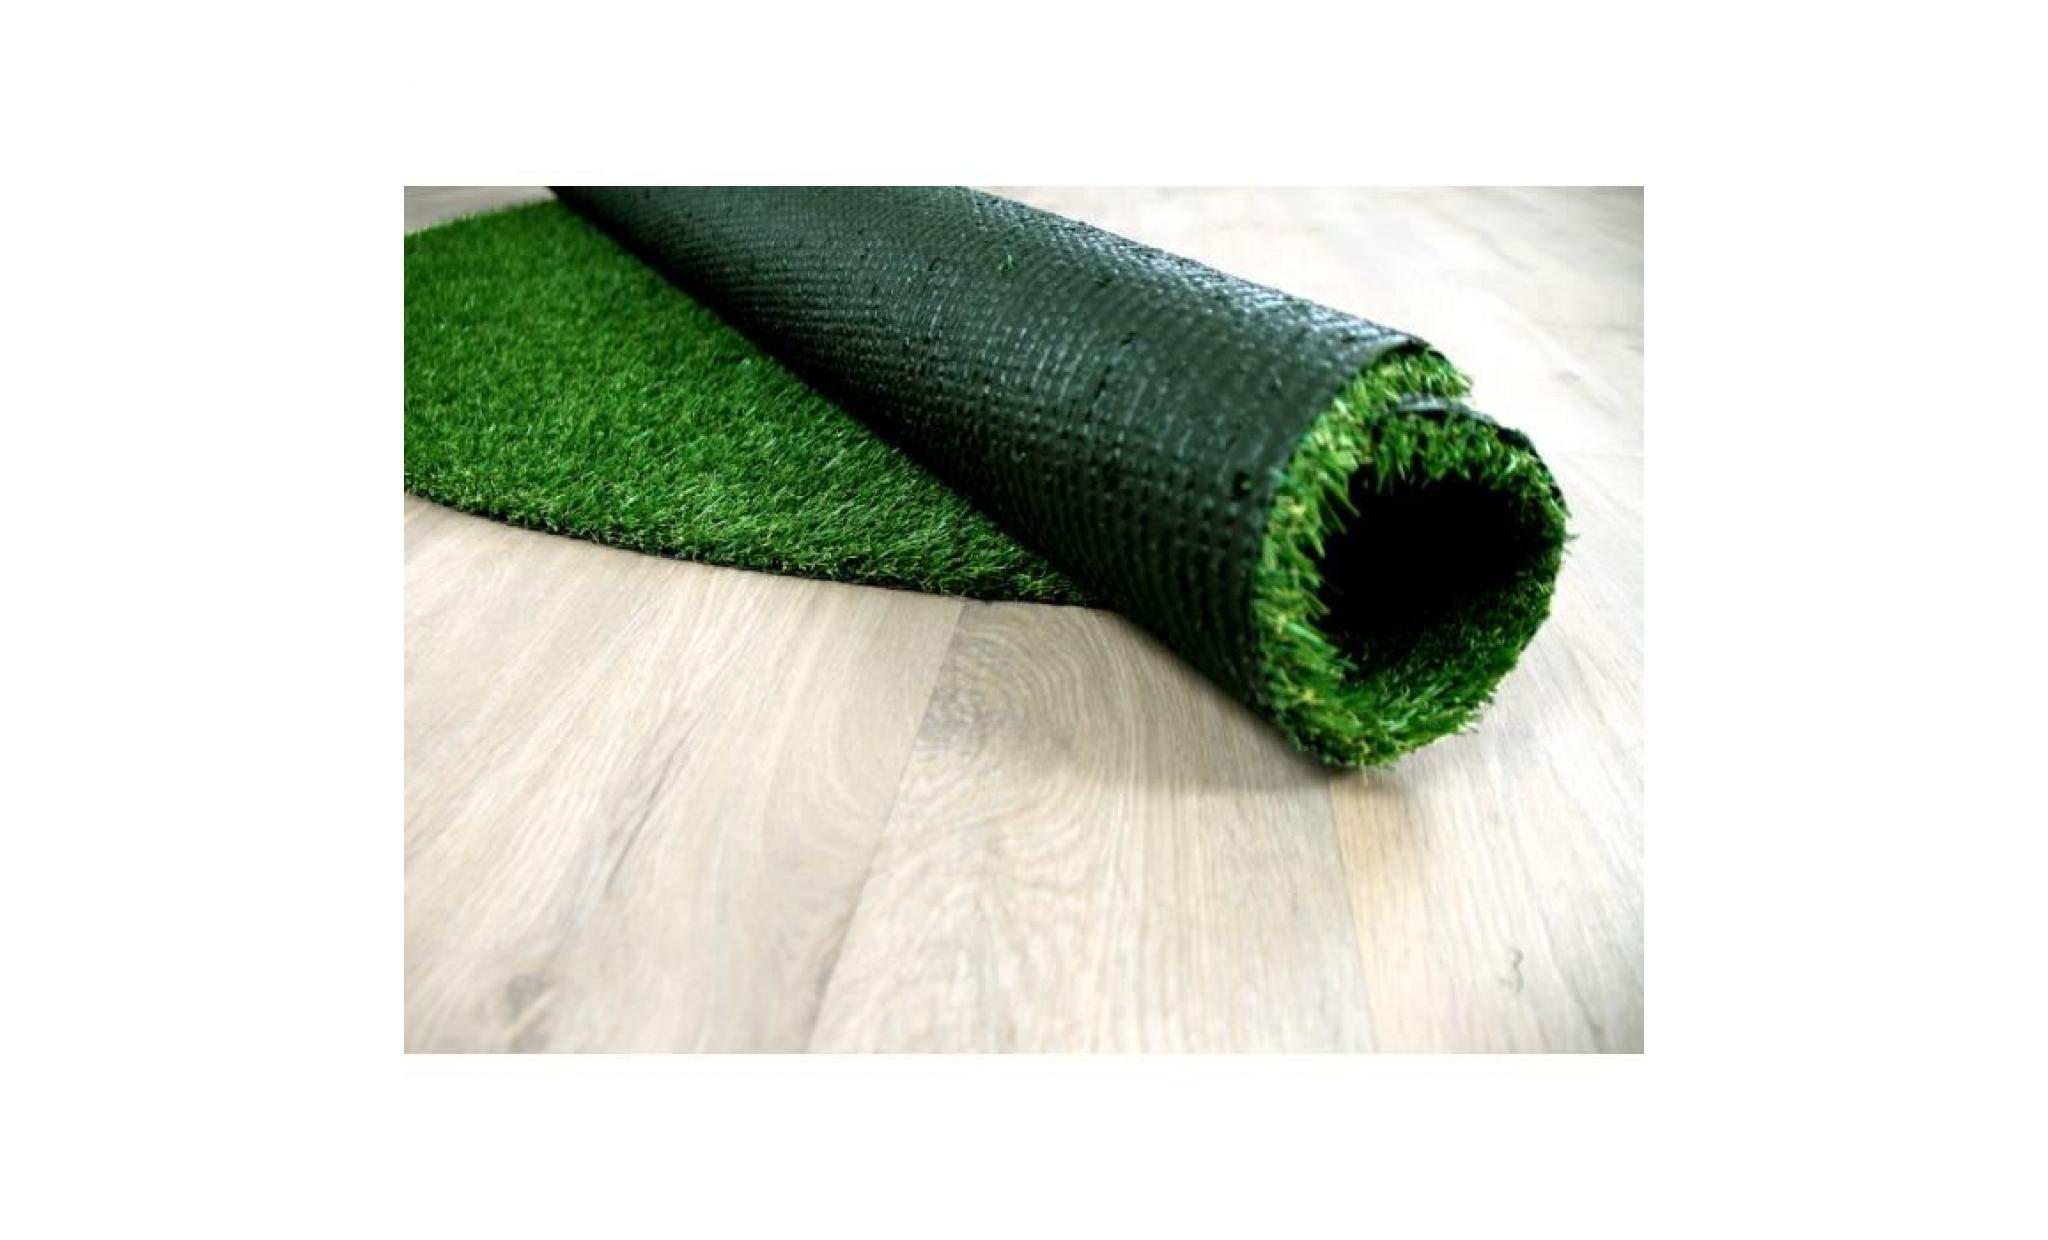 wembley   tapis type luxe gazon artificiel rond – pour jardin, terrasse, balcon   vert  [133 cm rond] pas cher